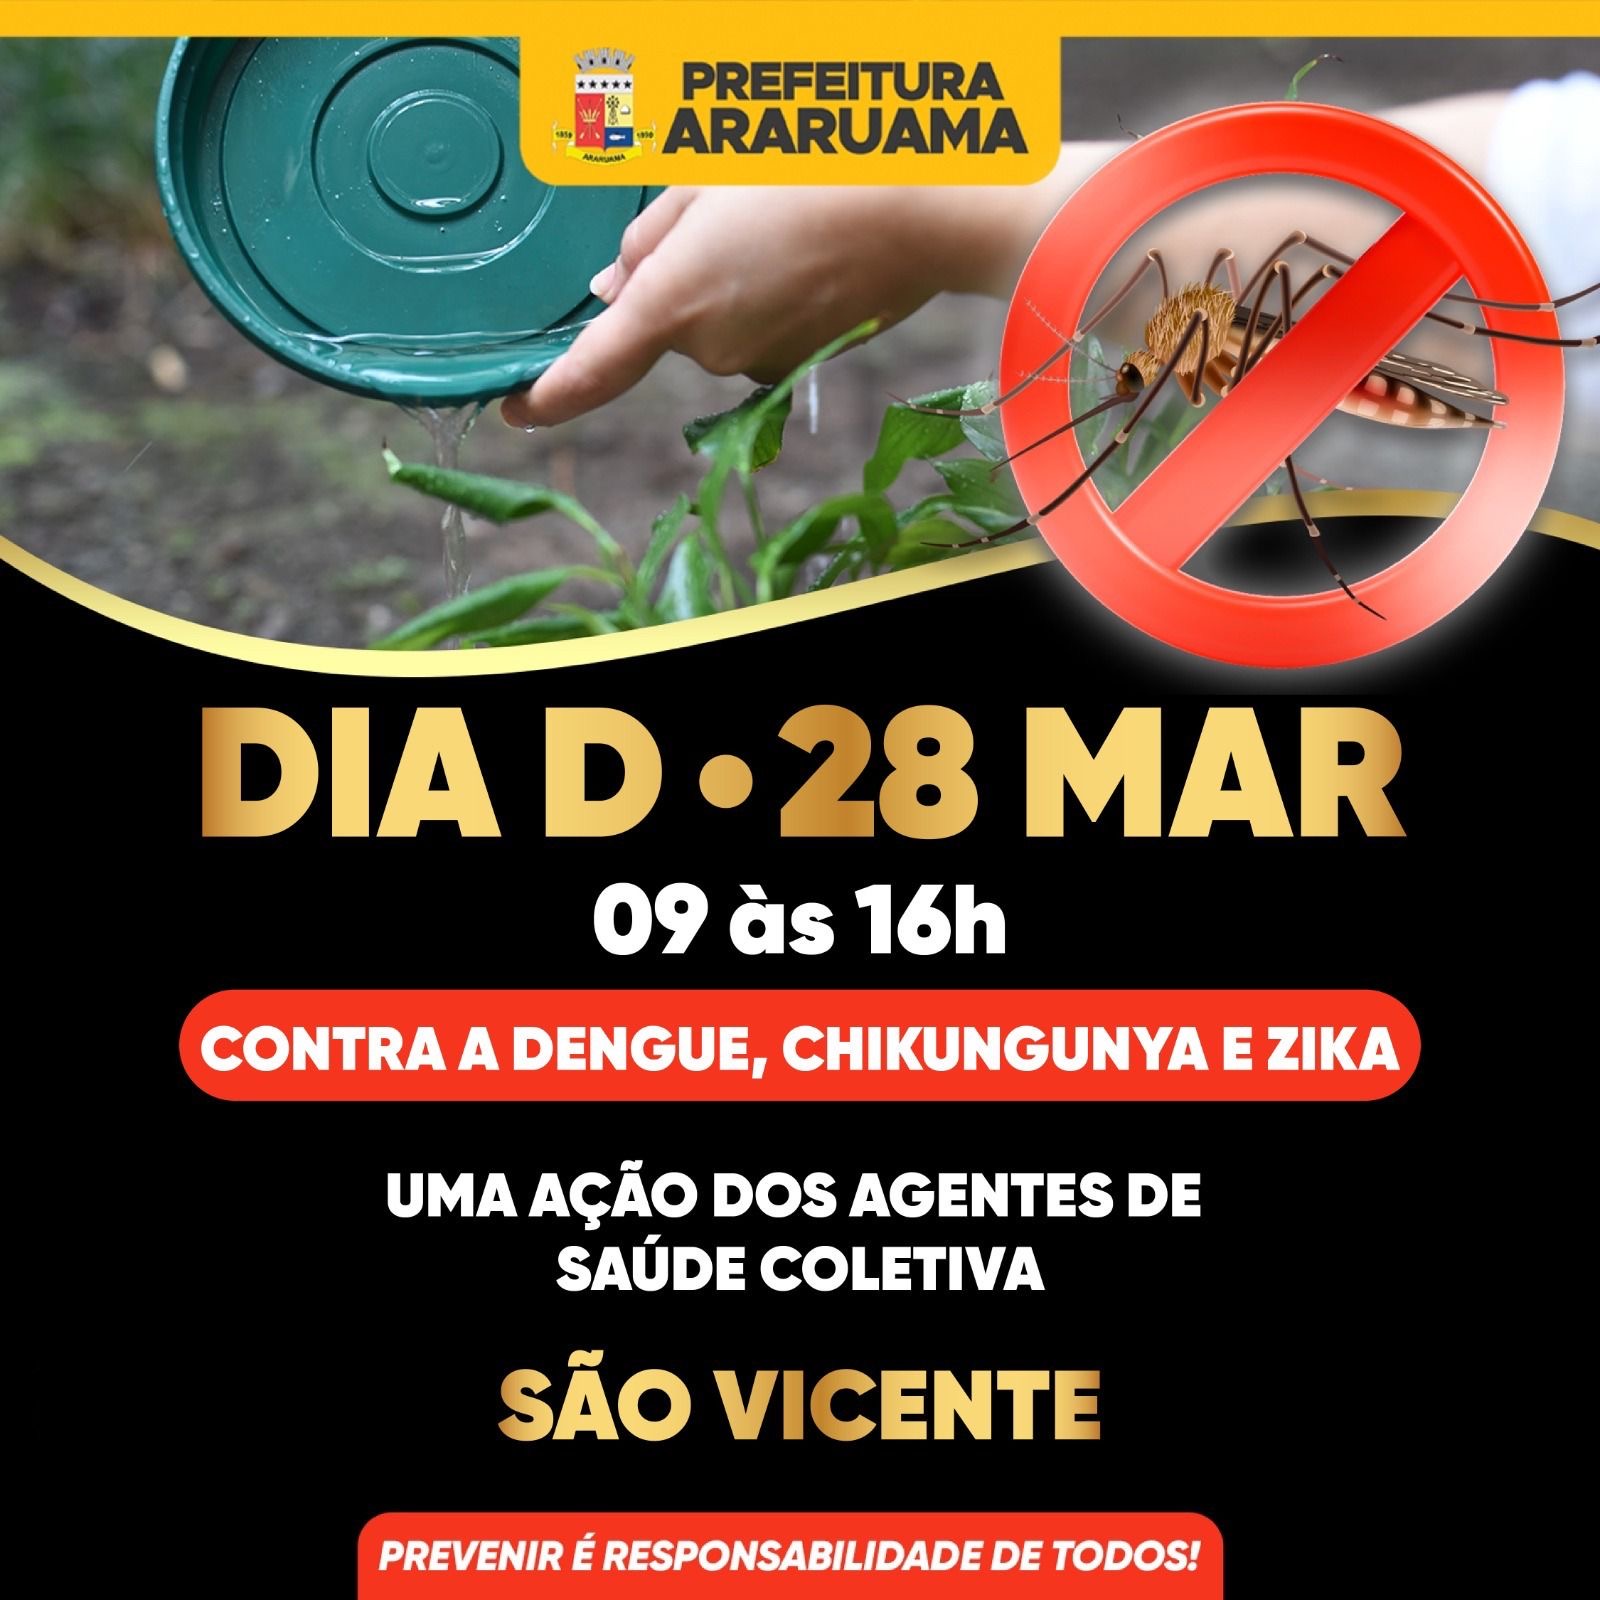 Prefeitura vai realizar o Dia D contra a dengue no distrito de São Vicente, nessa quinta-feira, 28